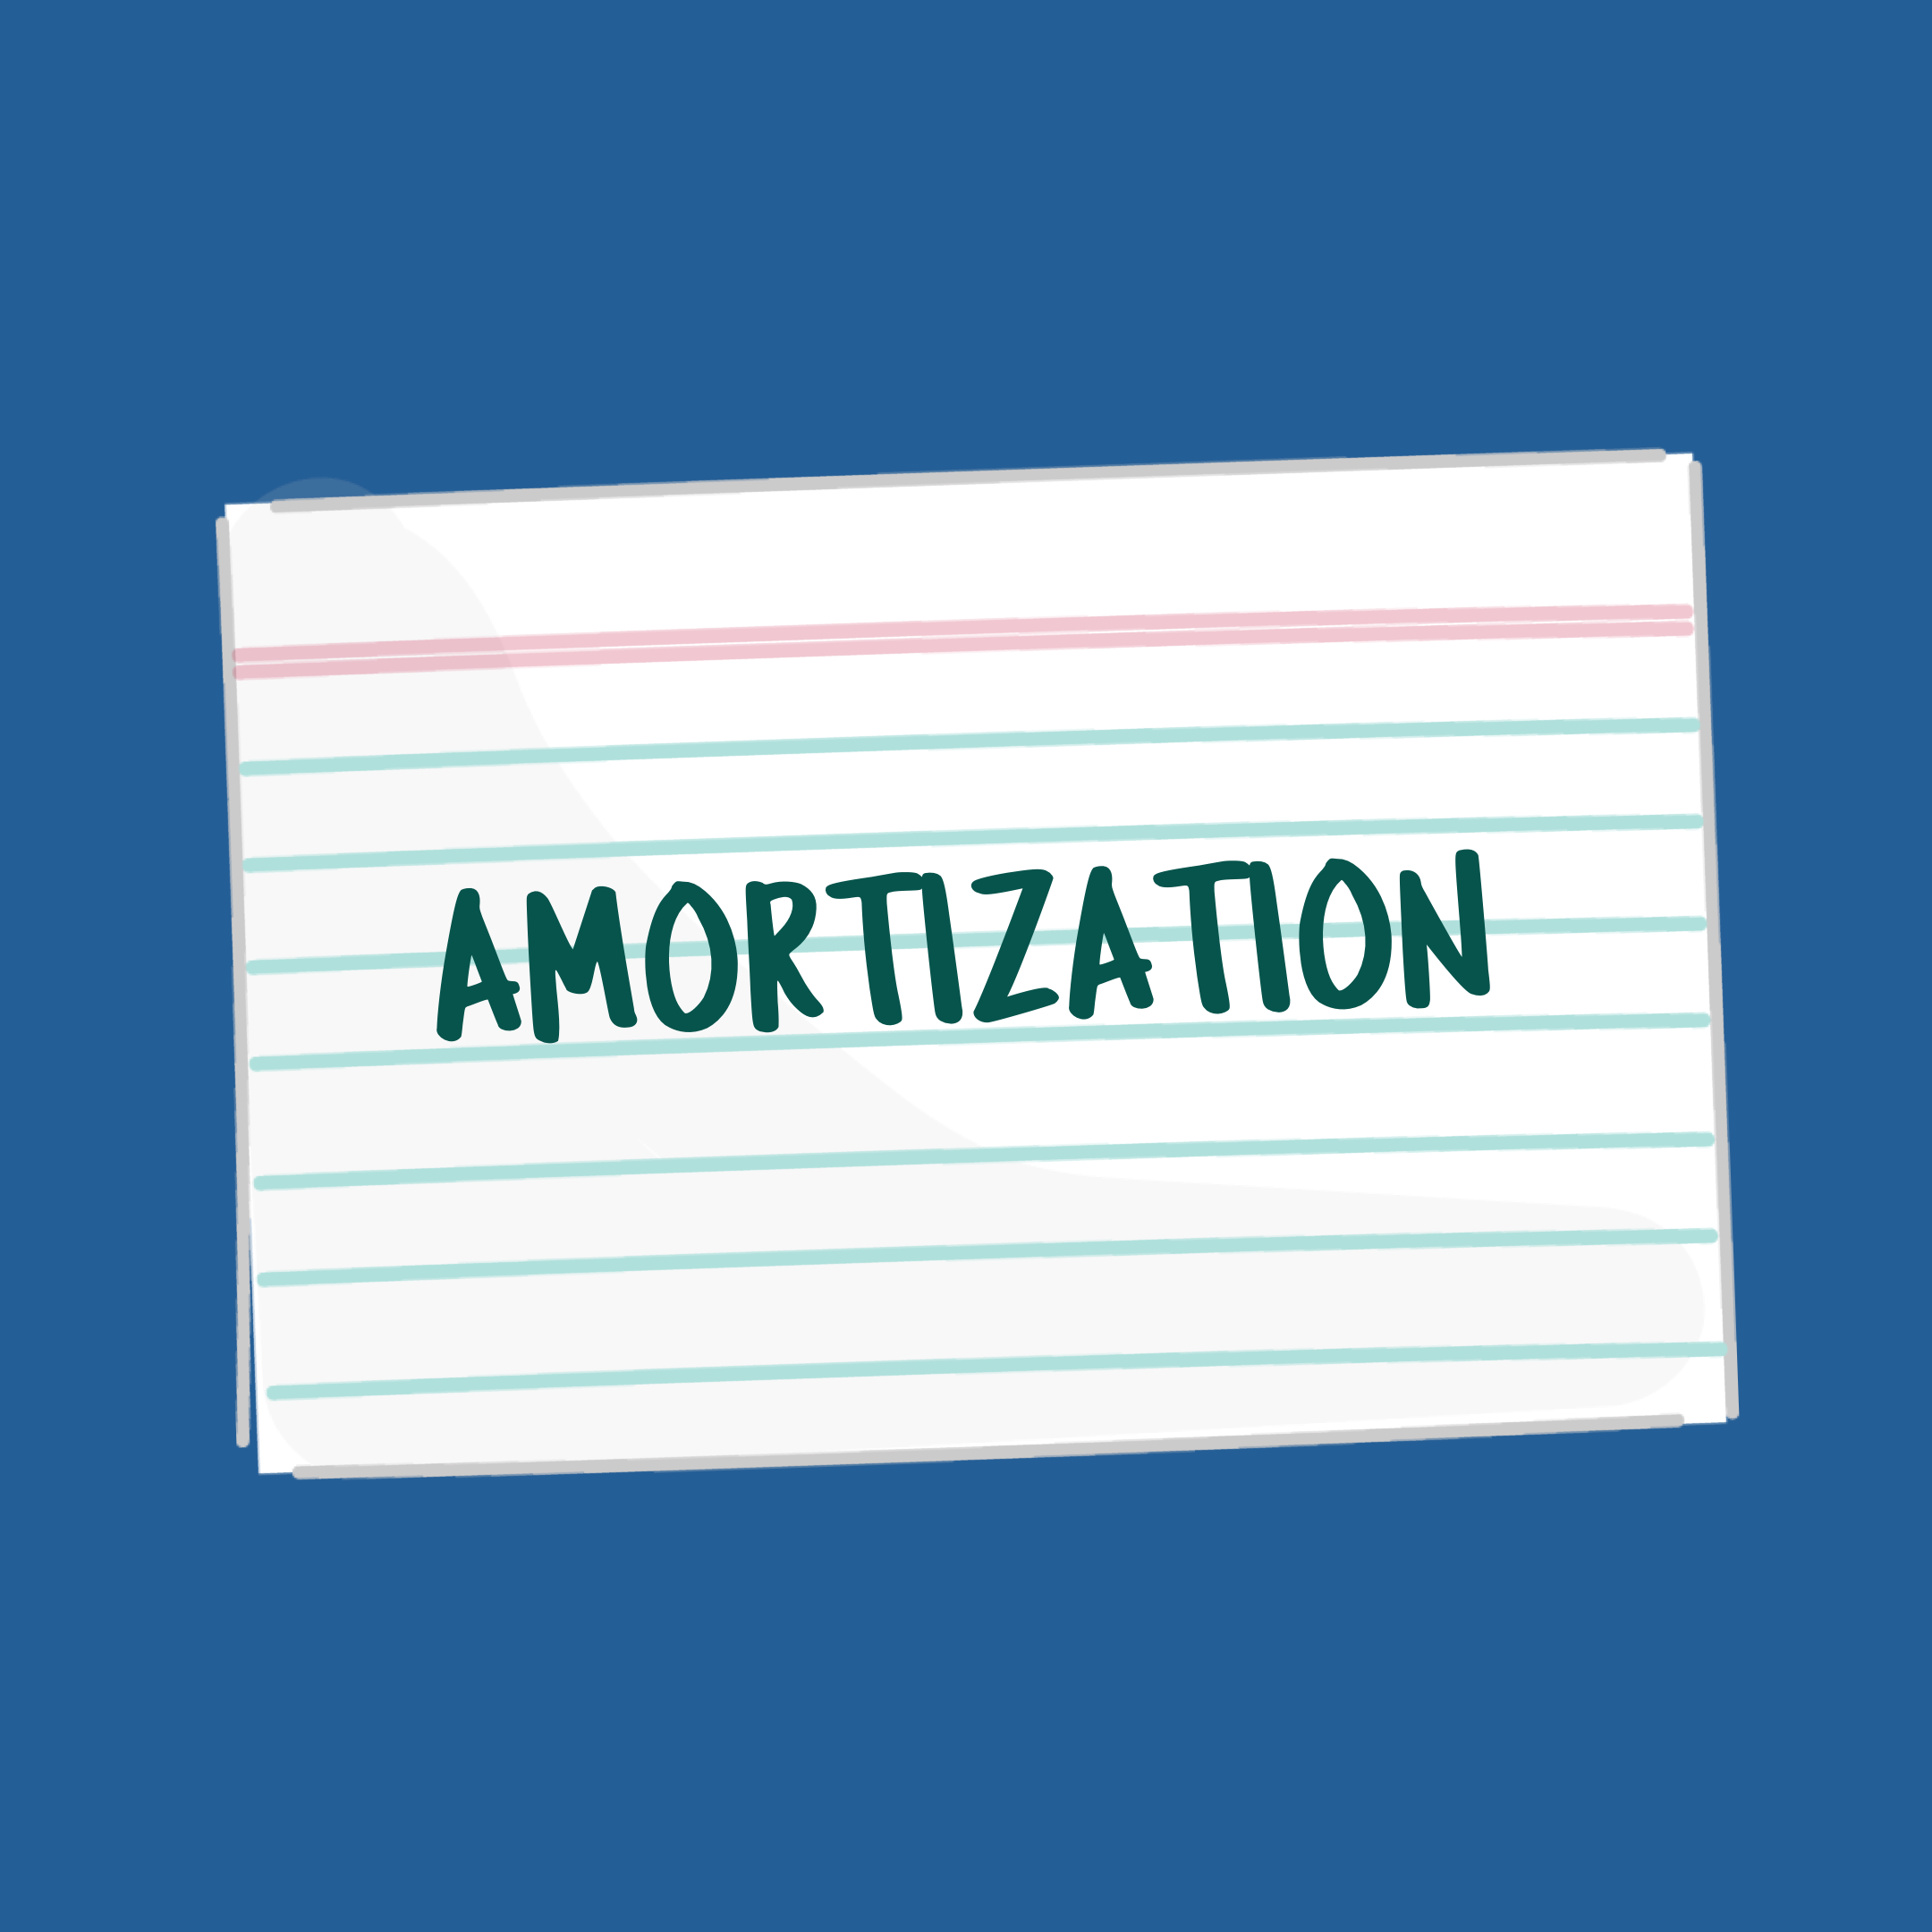 amortizationFSL